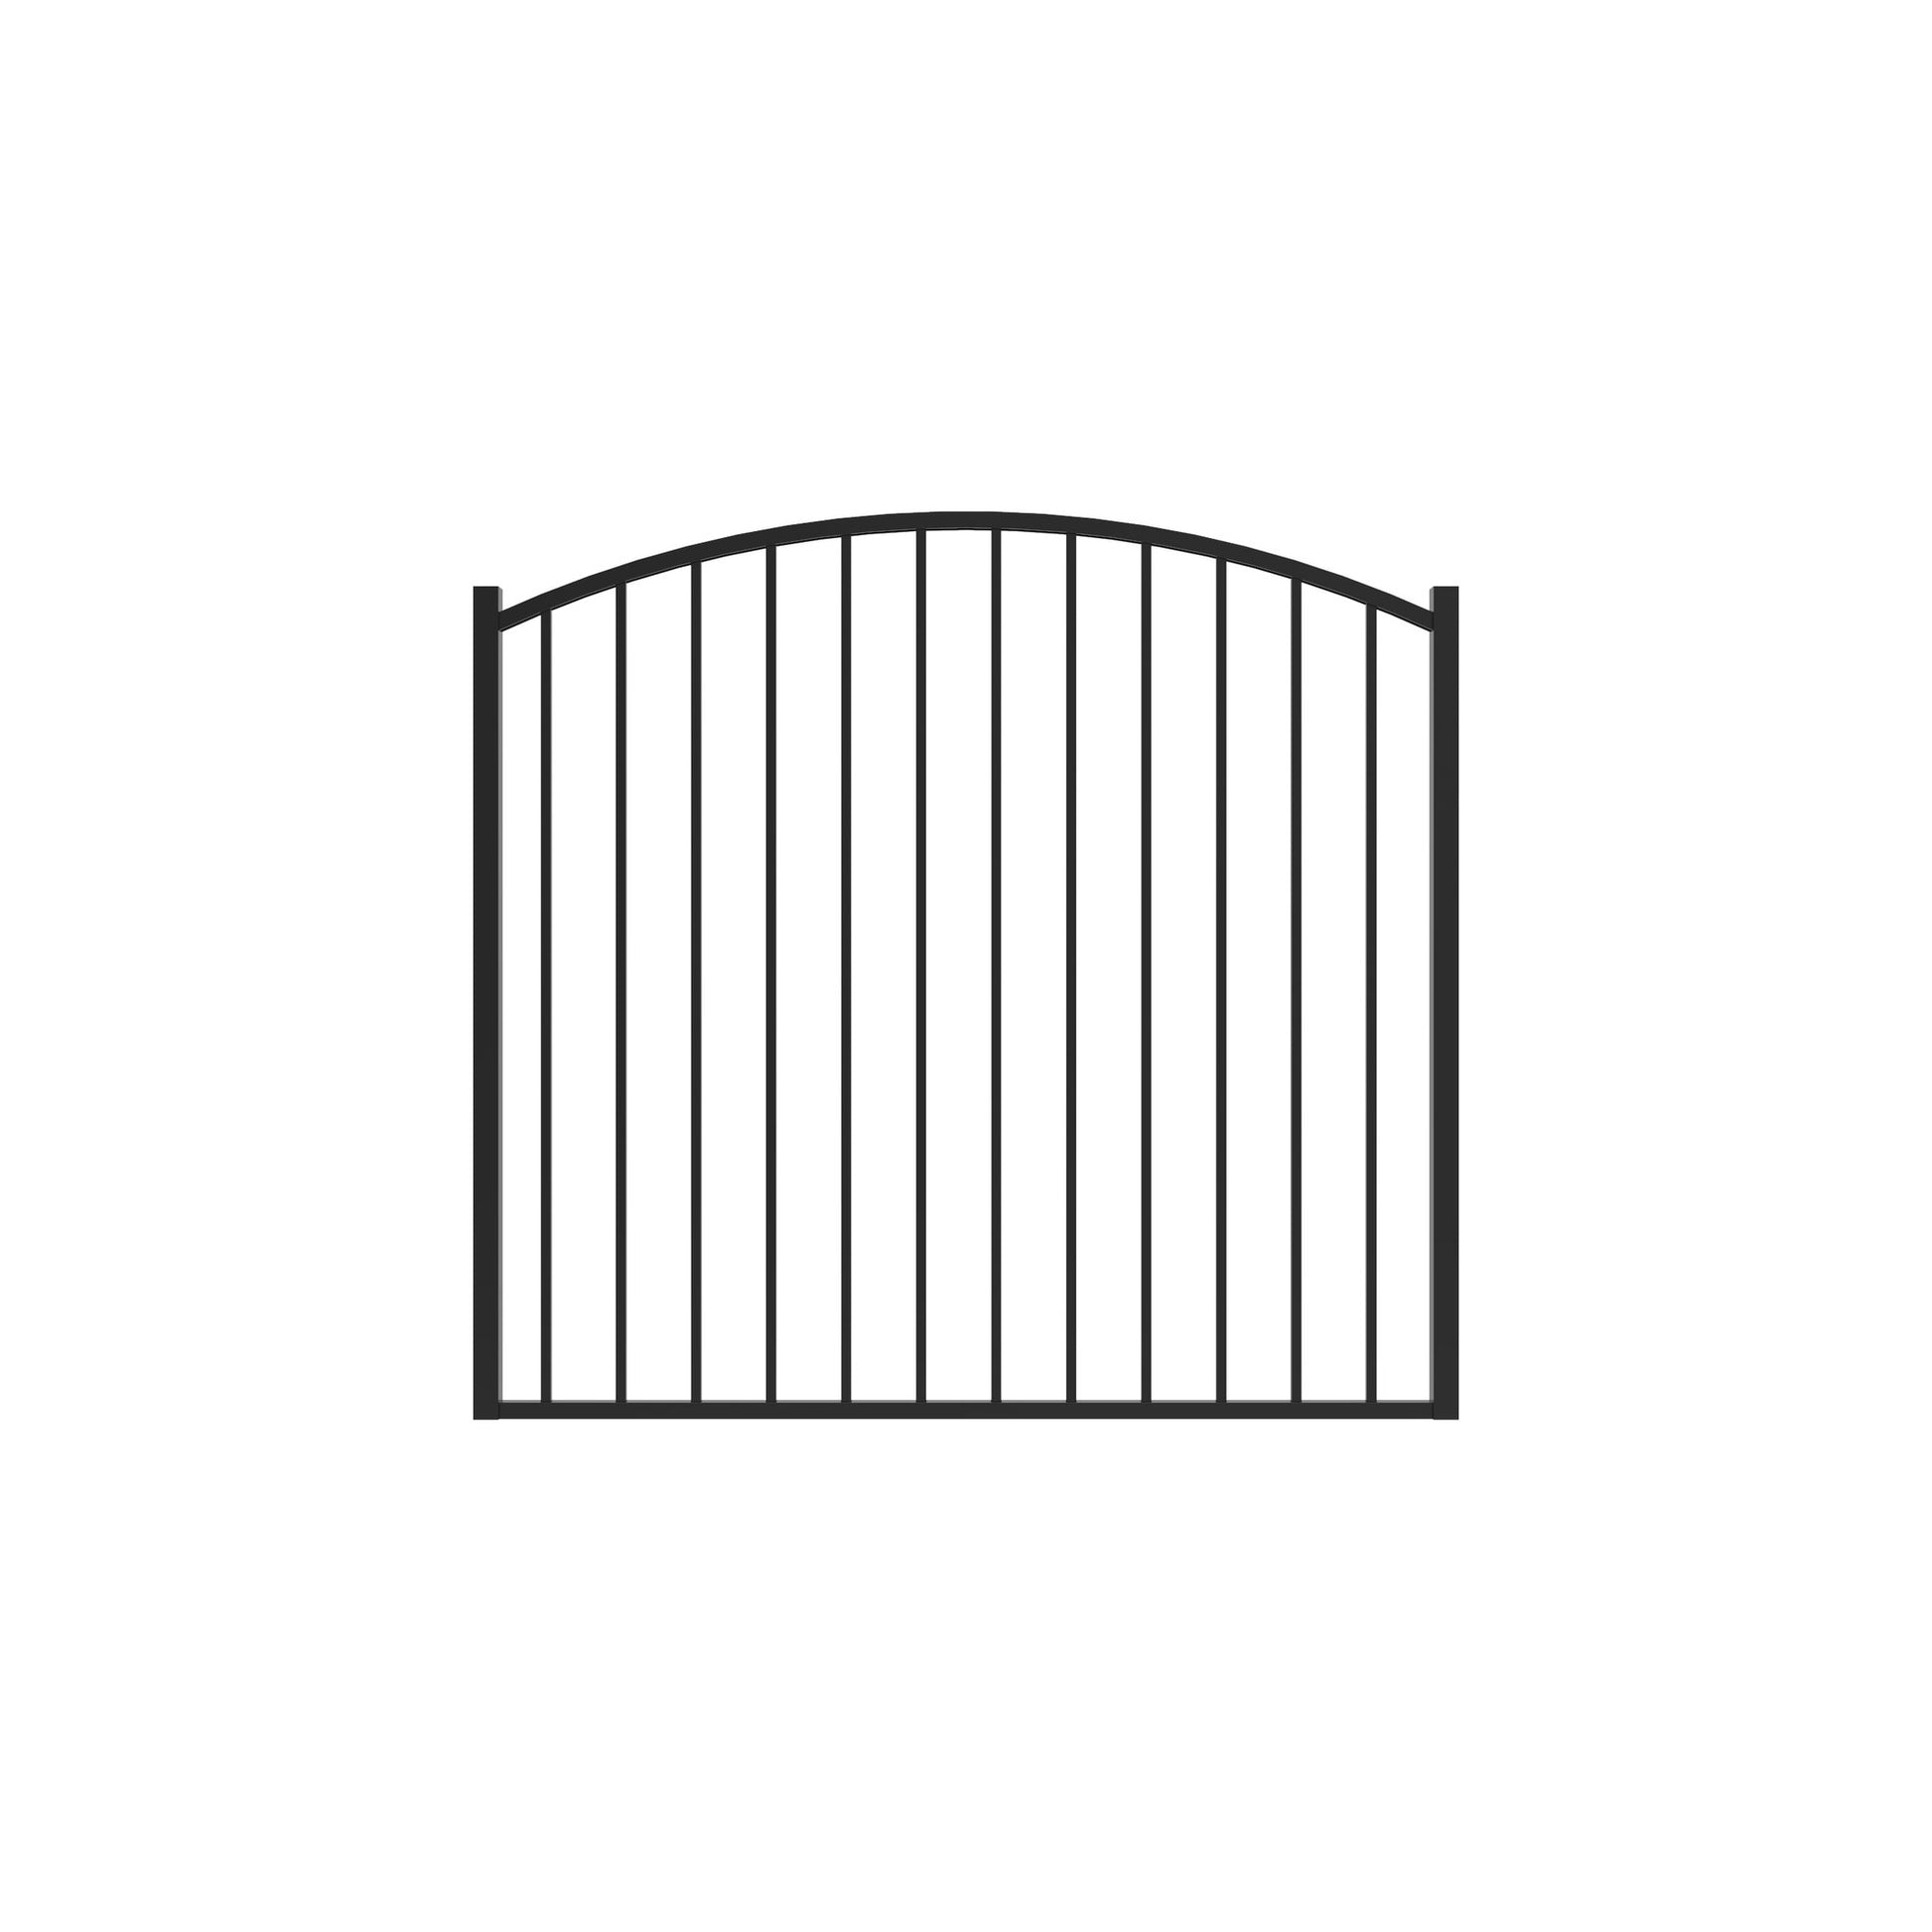 Bedrock Harbor Series - Arched Gate - 4' x 5'-Aluminum Fence Gates-ActiveYards-Black-FenceCenter